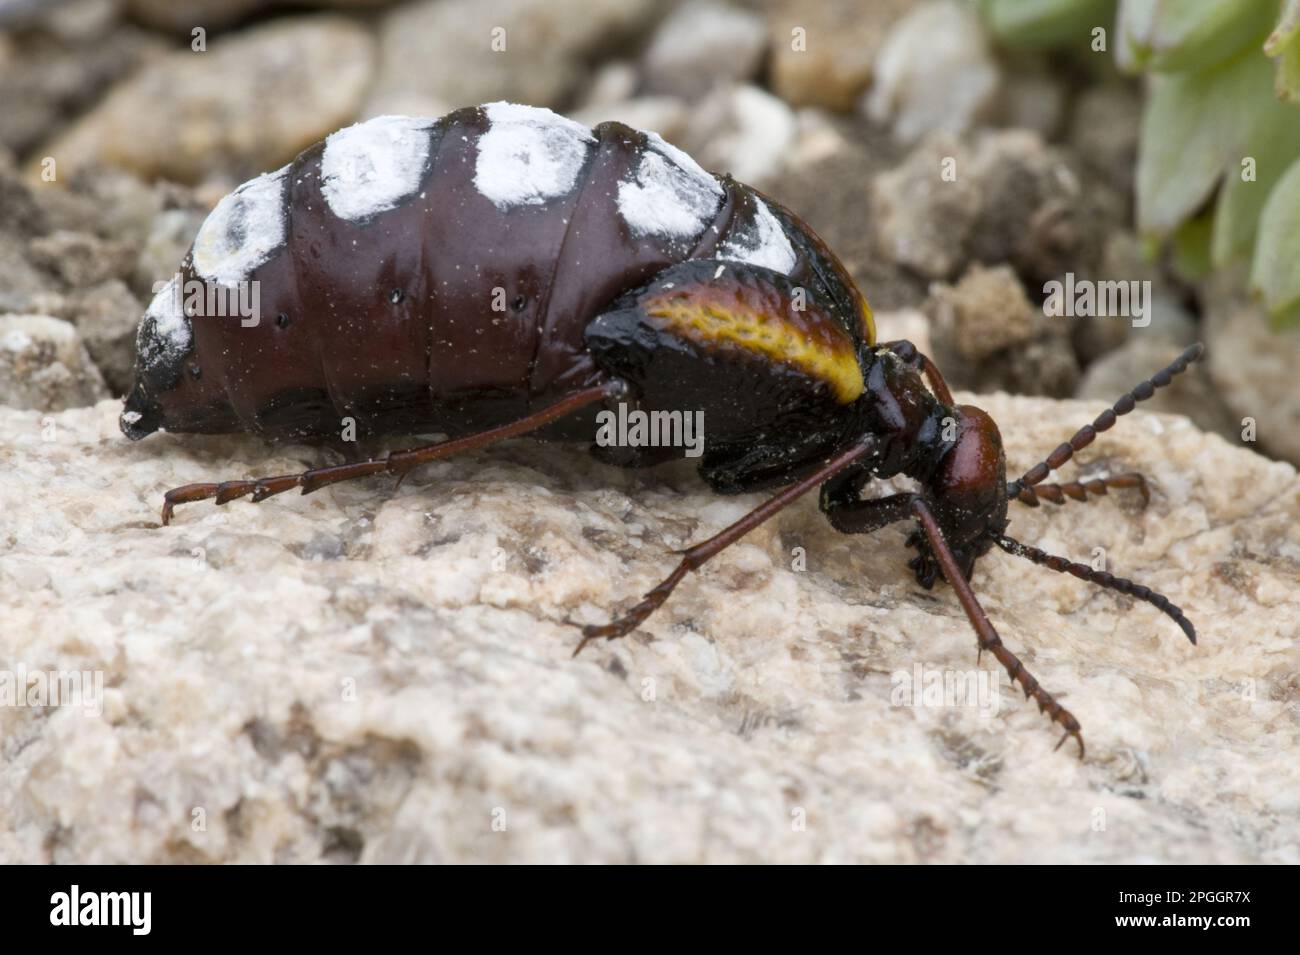 Blister beetle (Pseudomeloe sanguinolentus) adult male, Parque National Pan de Azucar, Atacama Desert, Chile Stock Photo